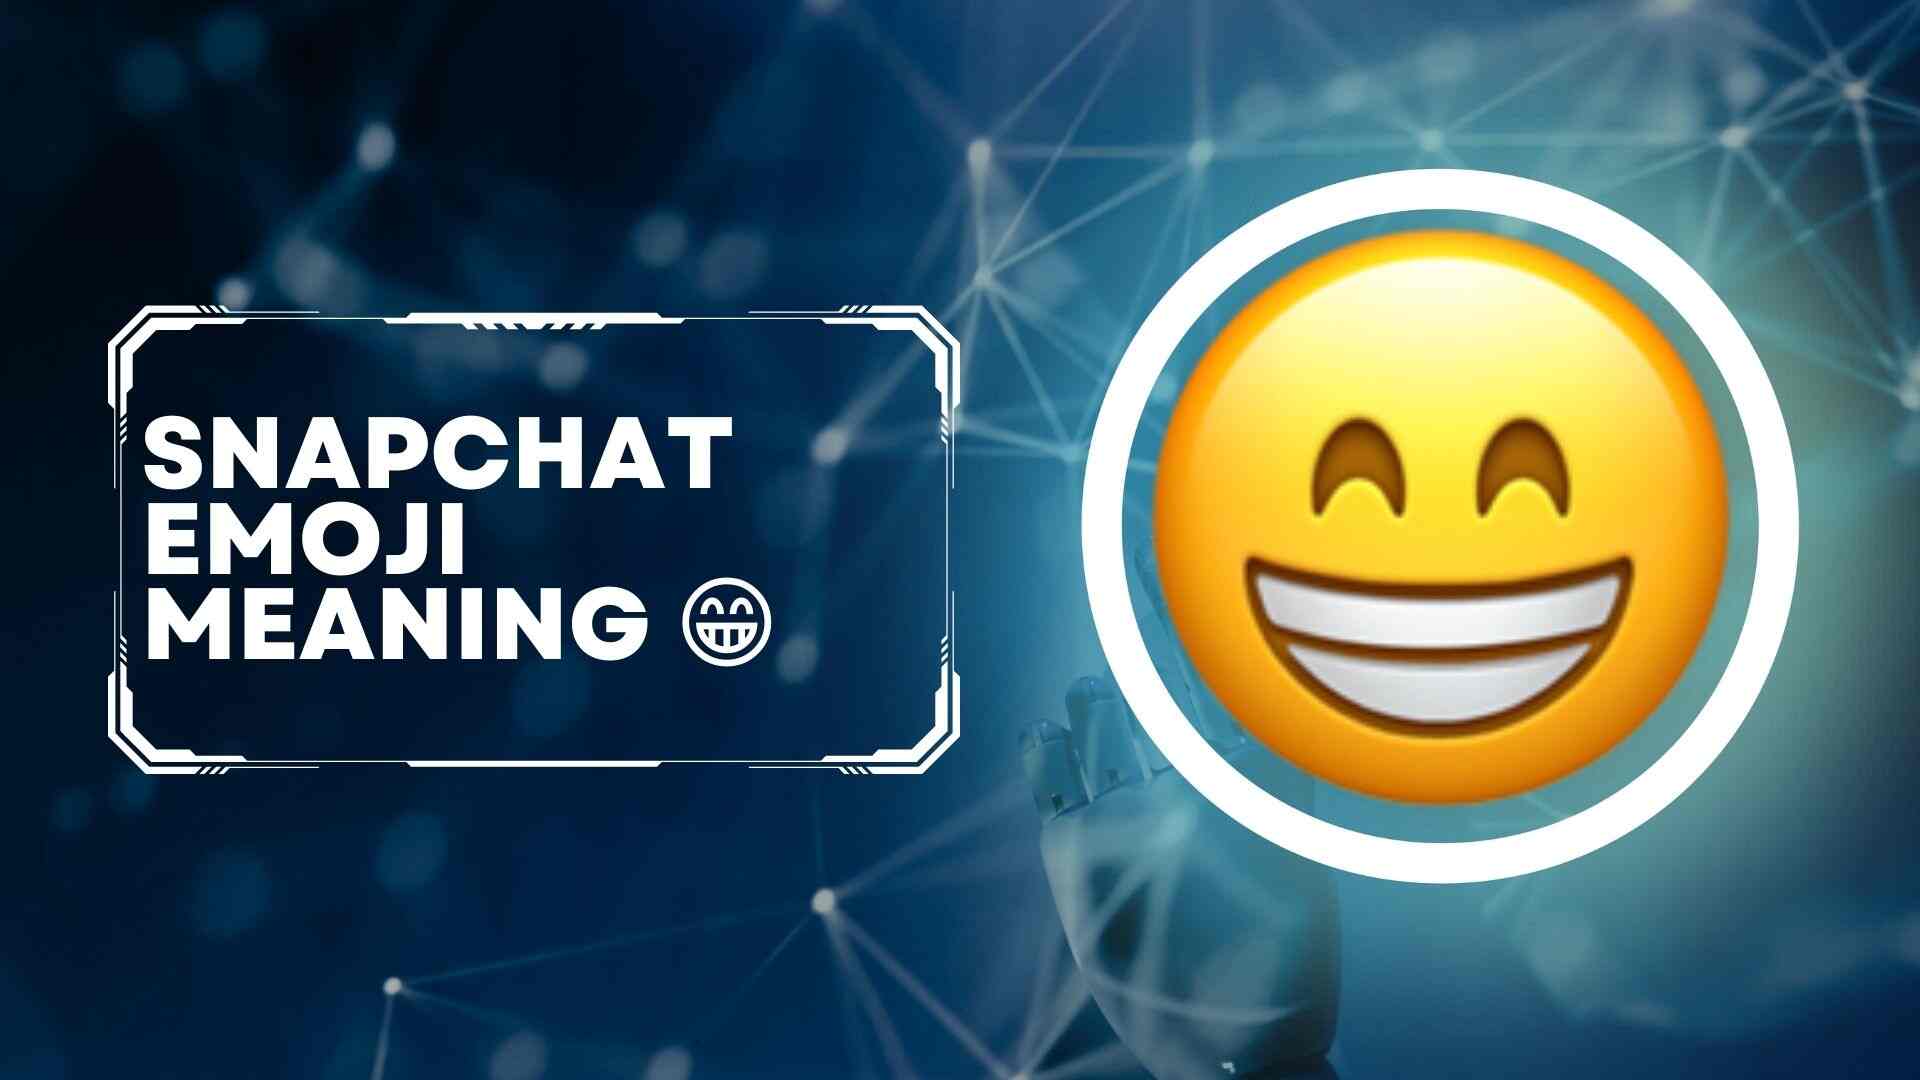 Snapchat emoji meaning 😁